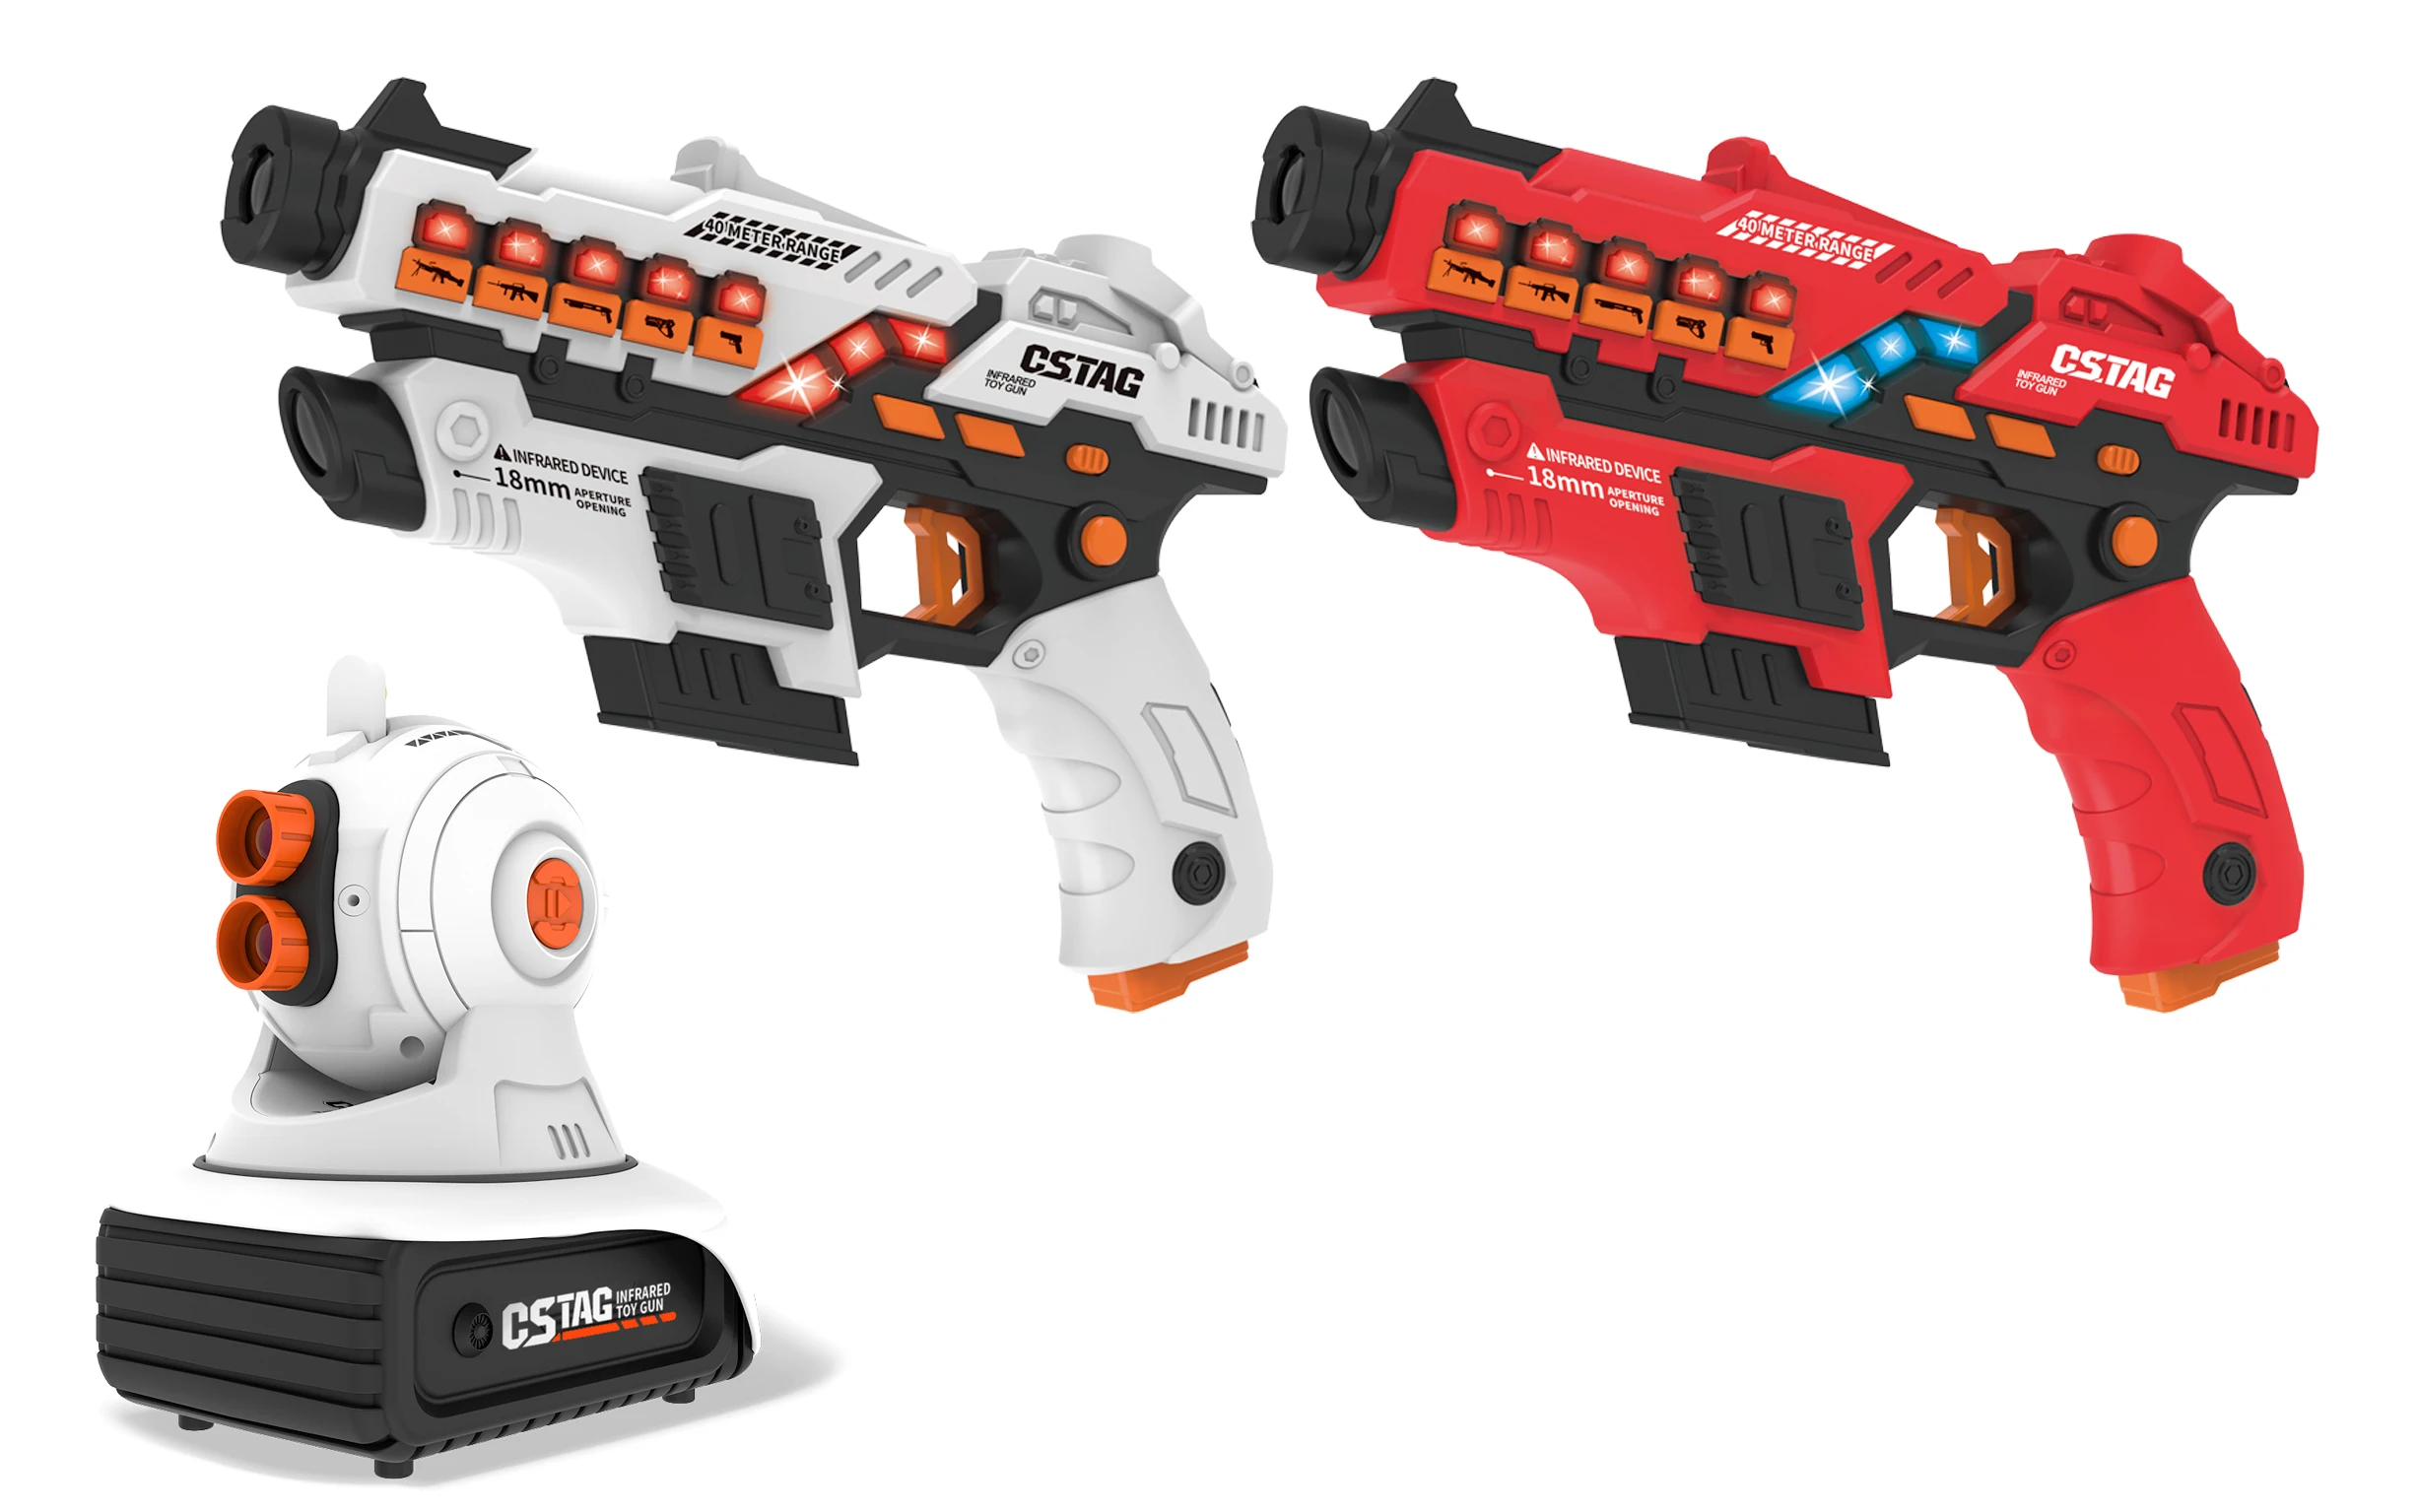 Pistolets jouets à étiquette laser pour enfants, odorinfrarouge